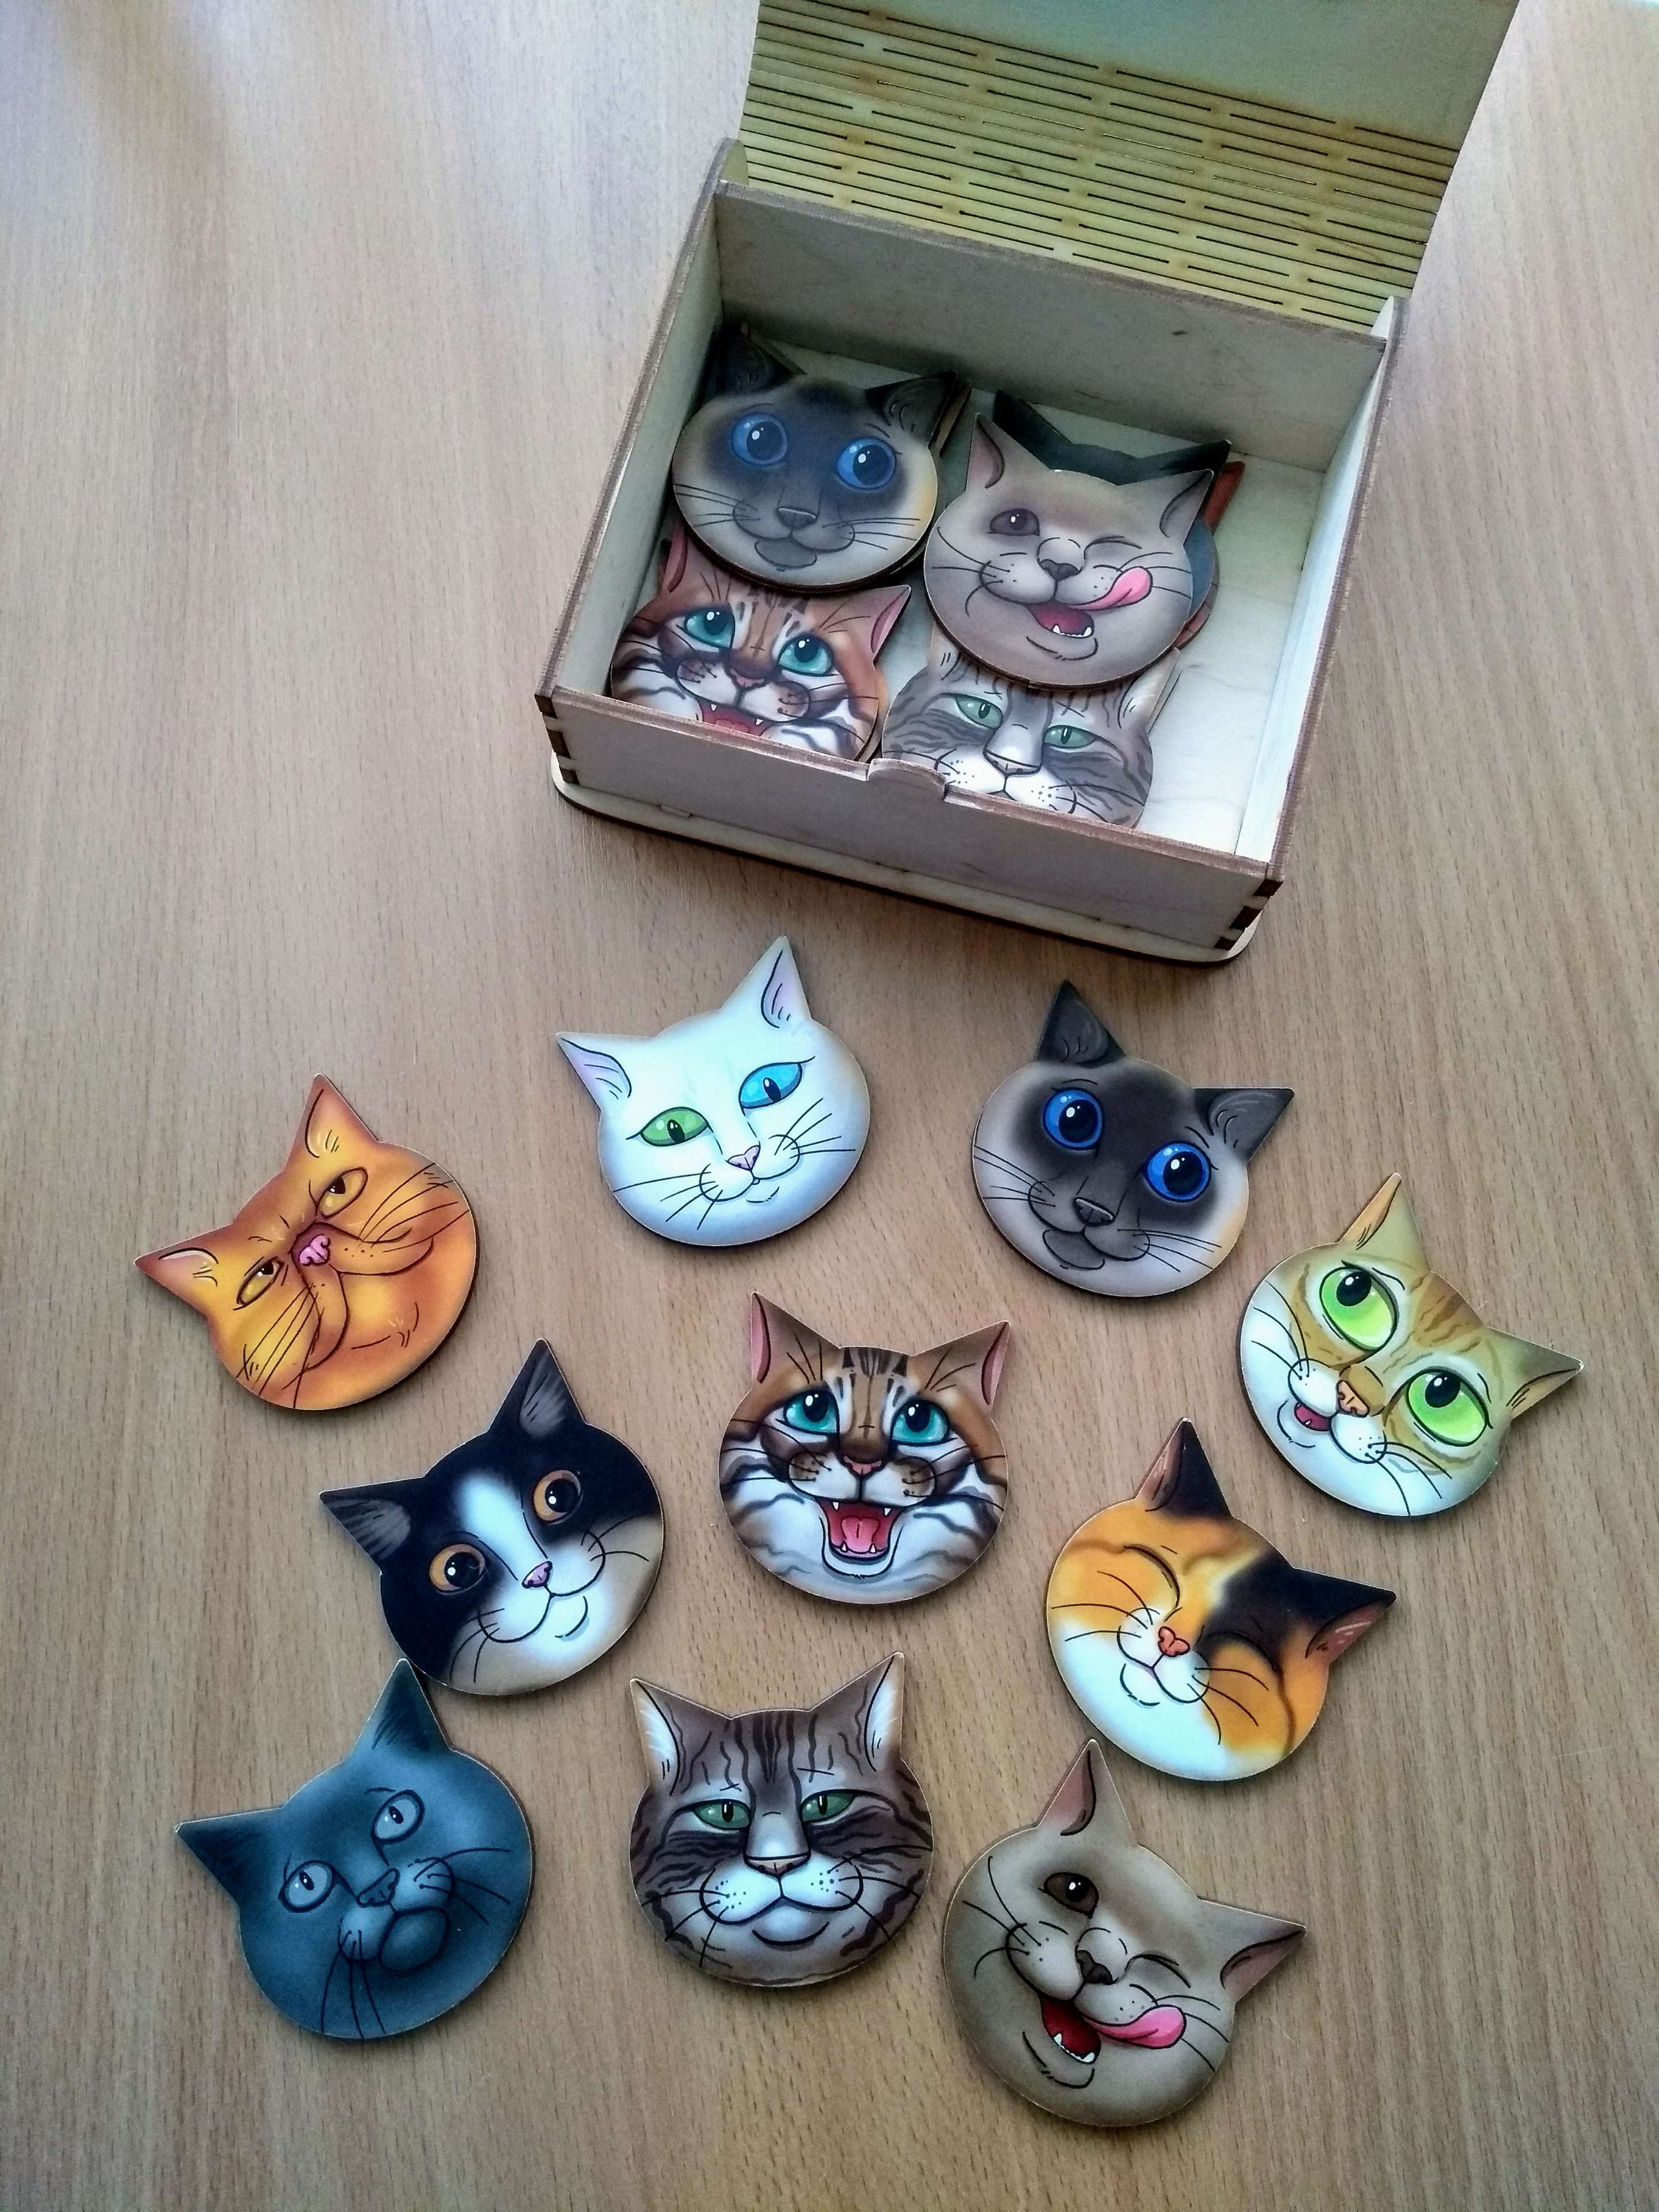 Фотография покупателя товара Игра для тренировки памяти «Мемо. Коты»